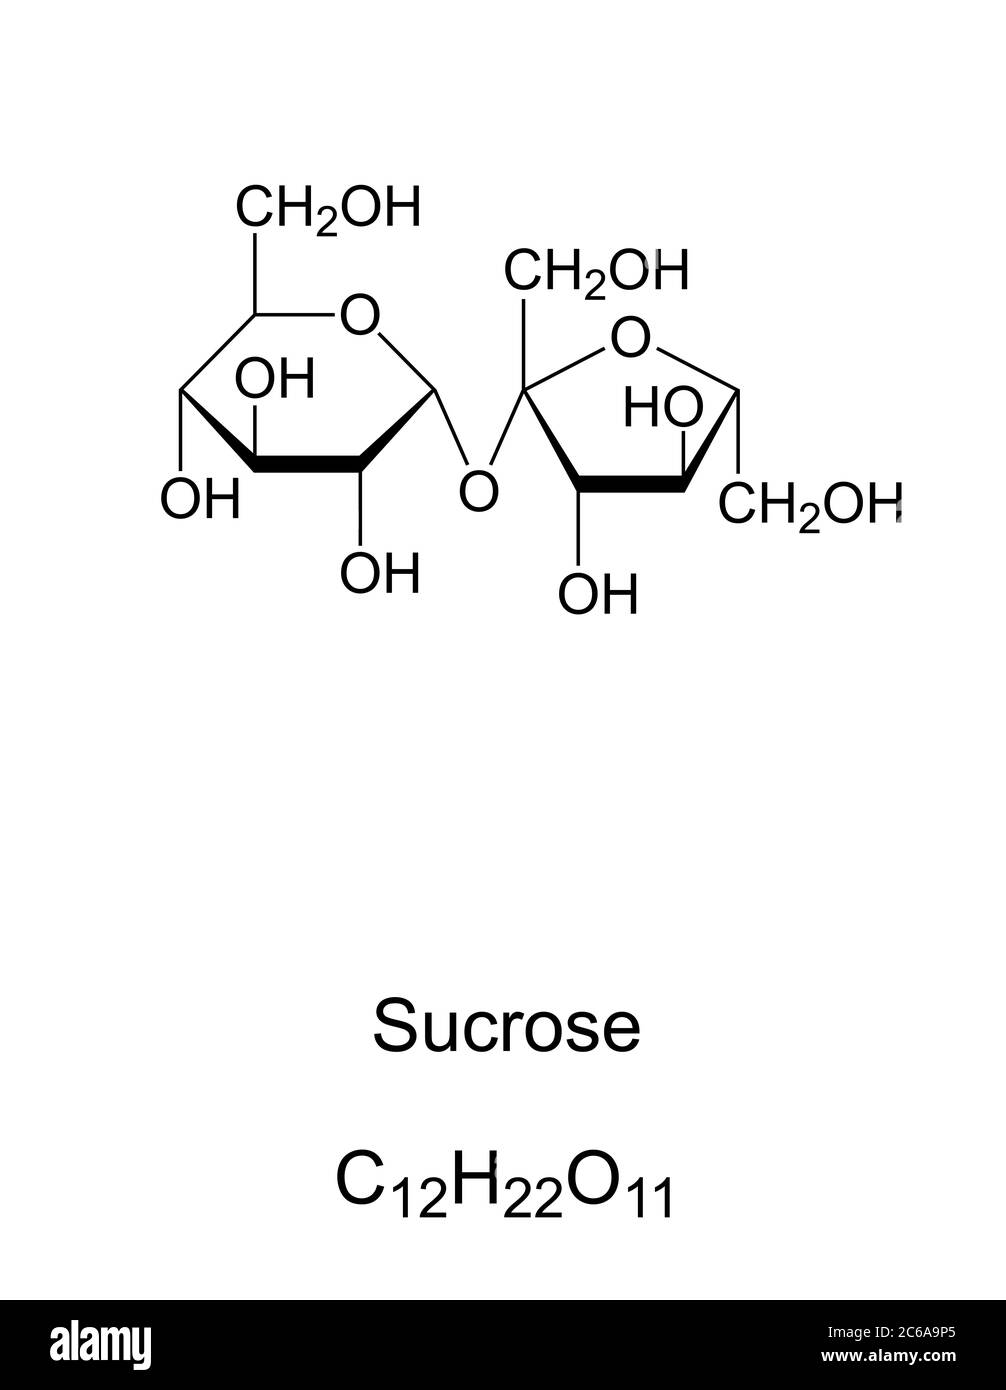 Saccharose, gewöhnlicher Zucker, chemische Struktur. Disaccharid besteht aus den beiden Monosacchariden Glucose und Fructose. Stockfoto